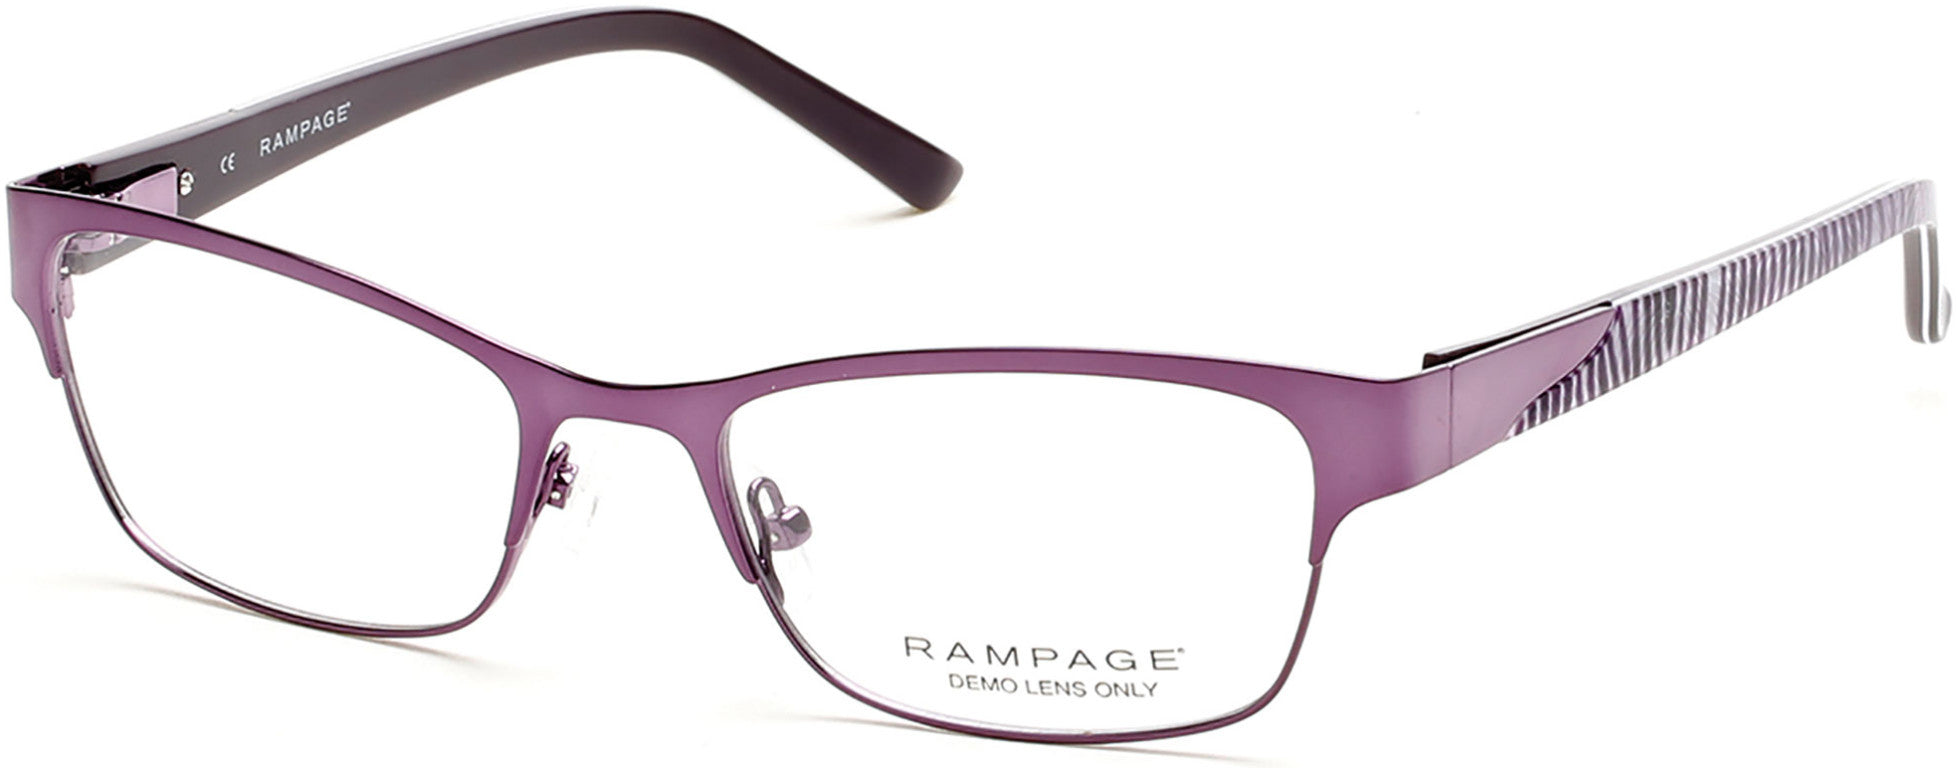 Rampage RA0194 Eyeglasses 081-081 - Shiny Violet